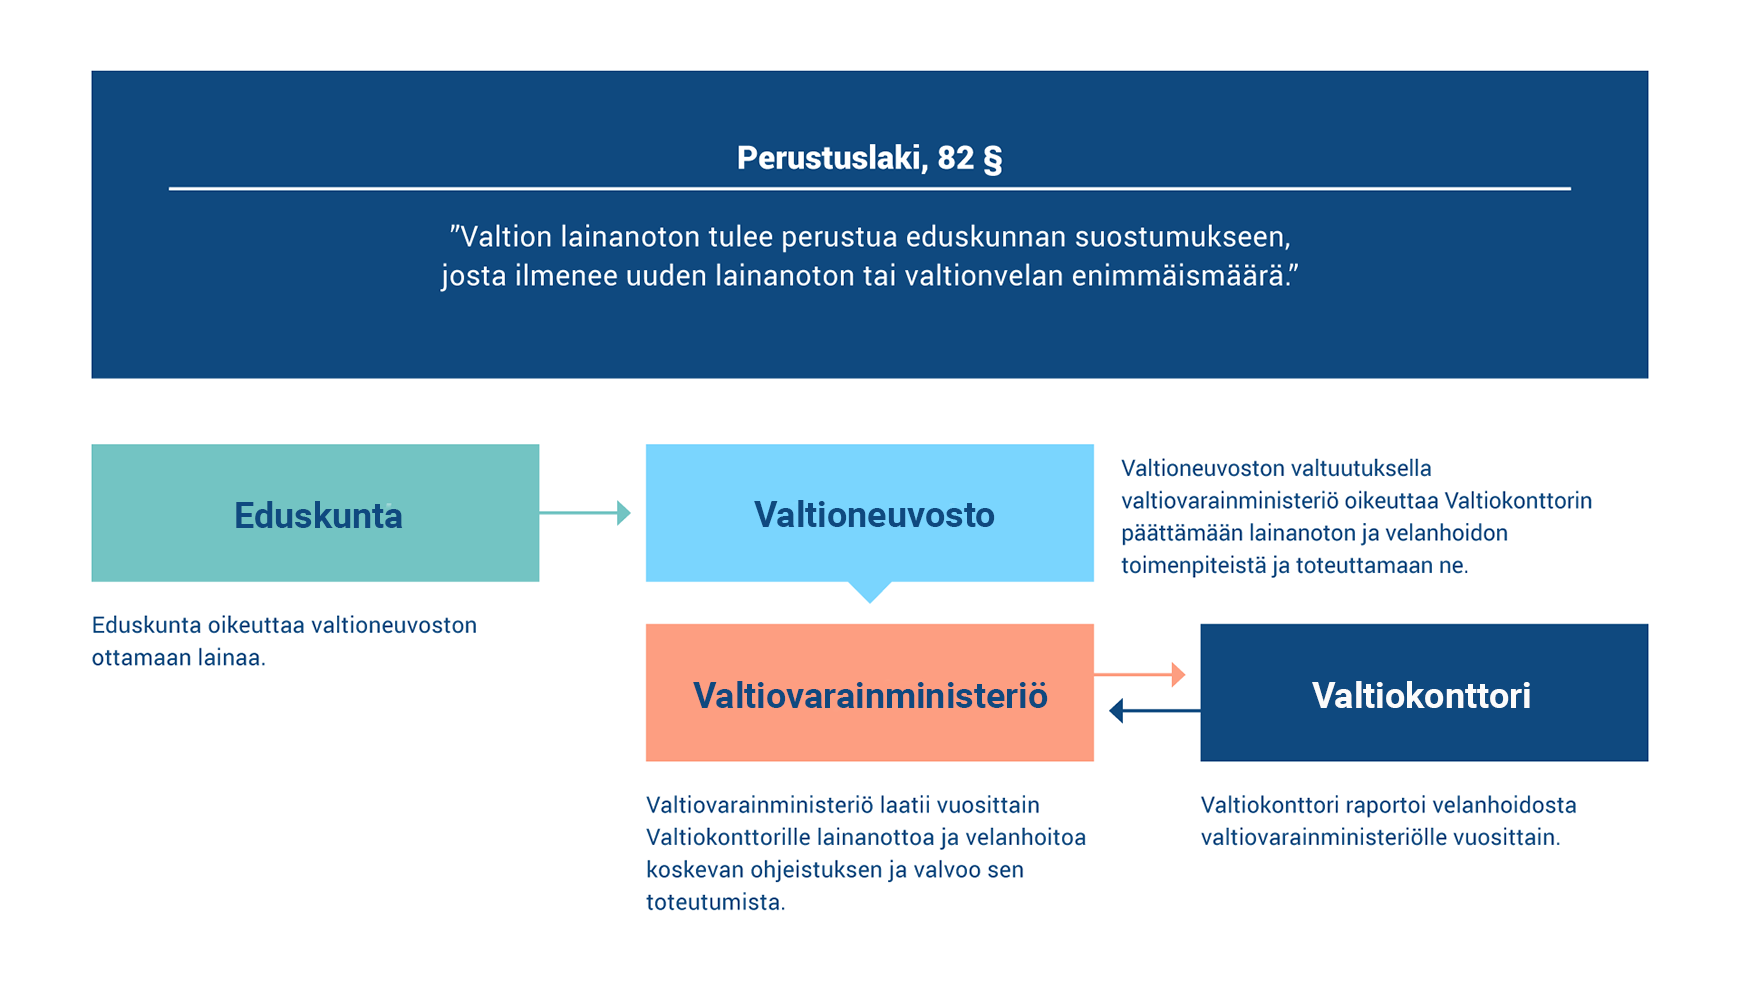 Kaavio kuvaa Suomen velanhallinnan kehikon.